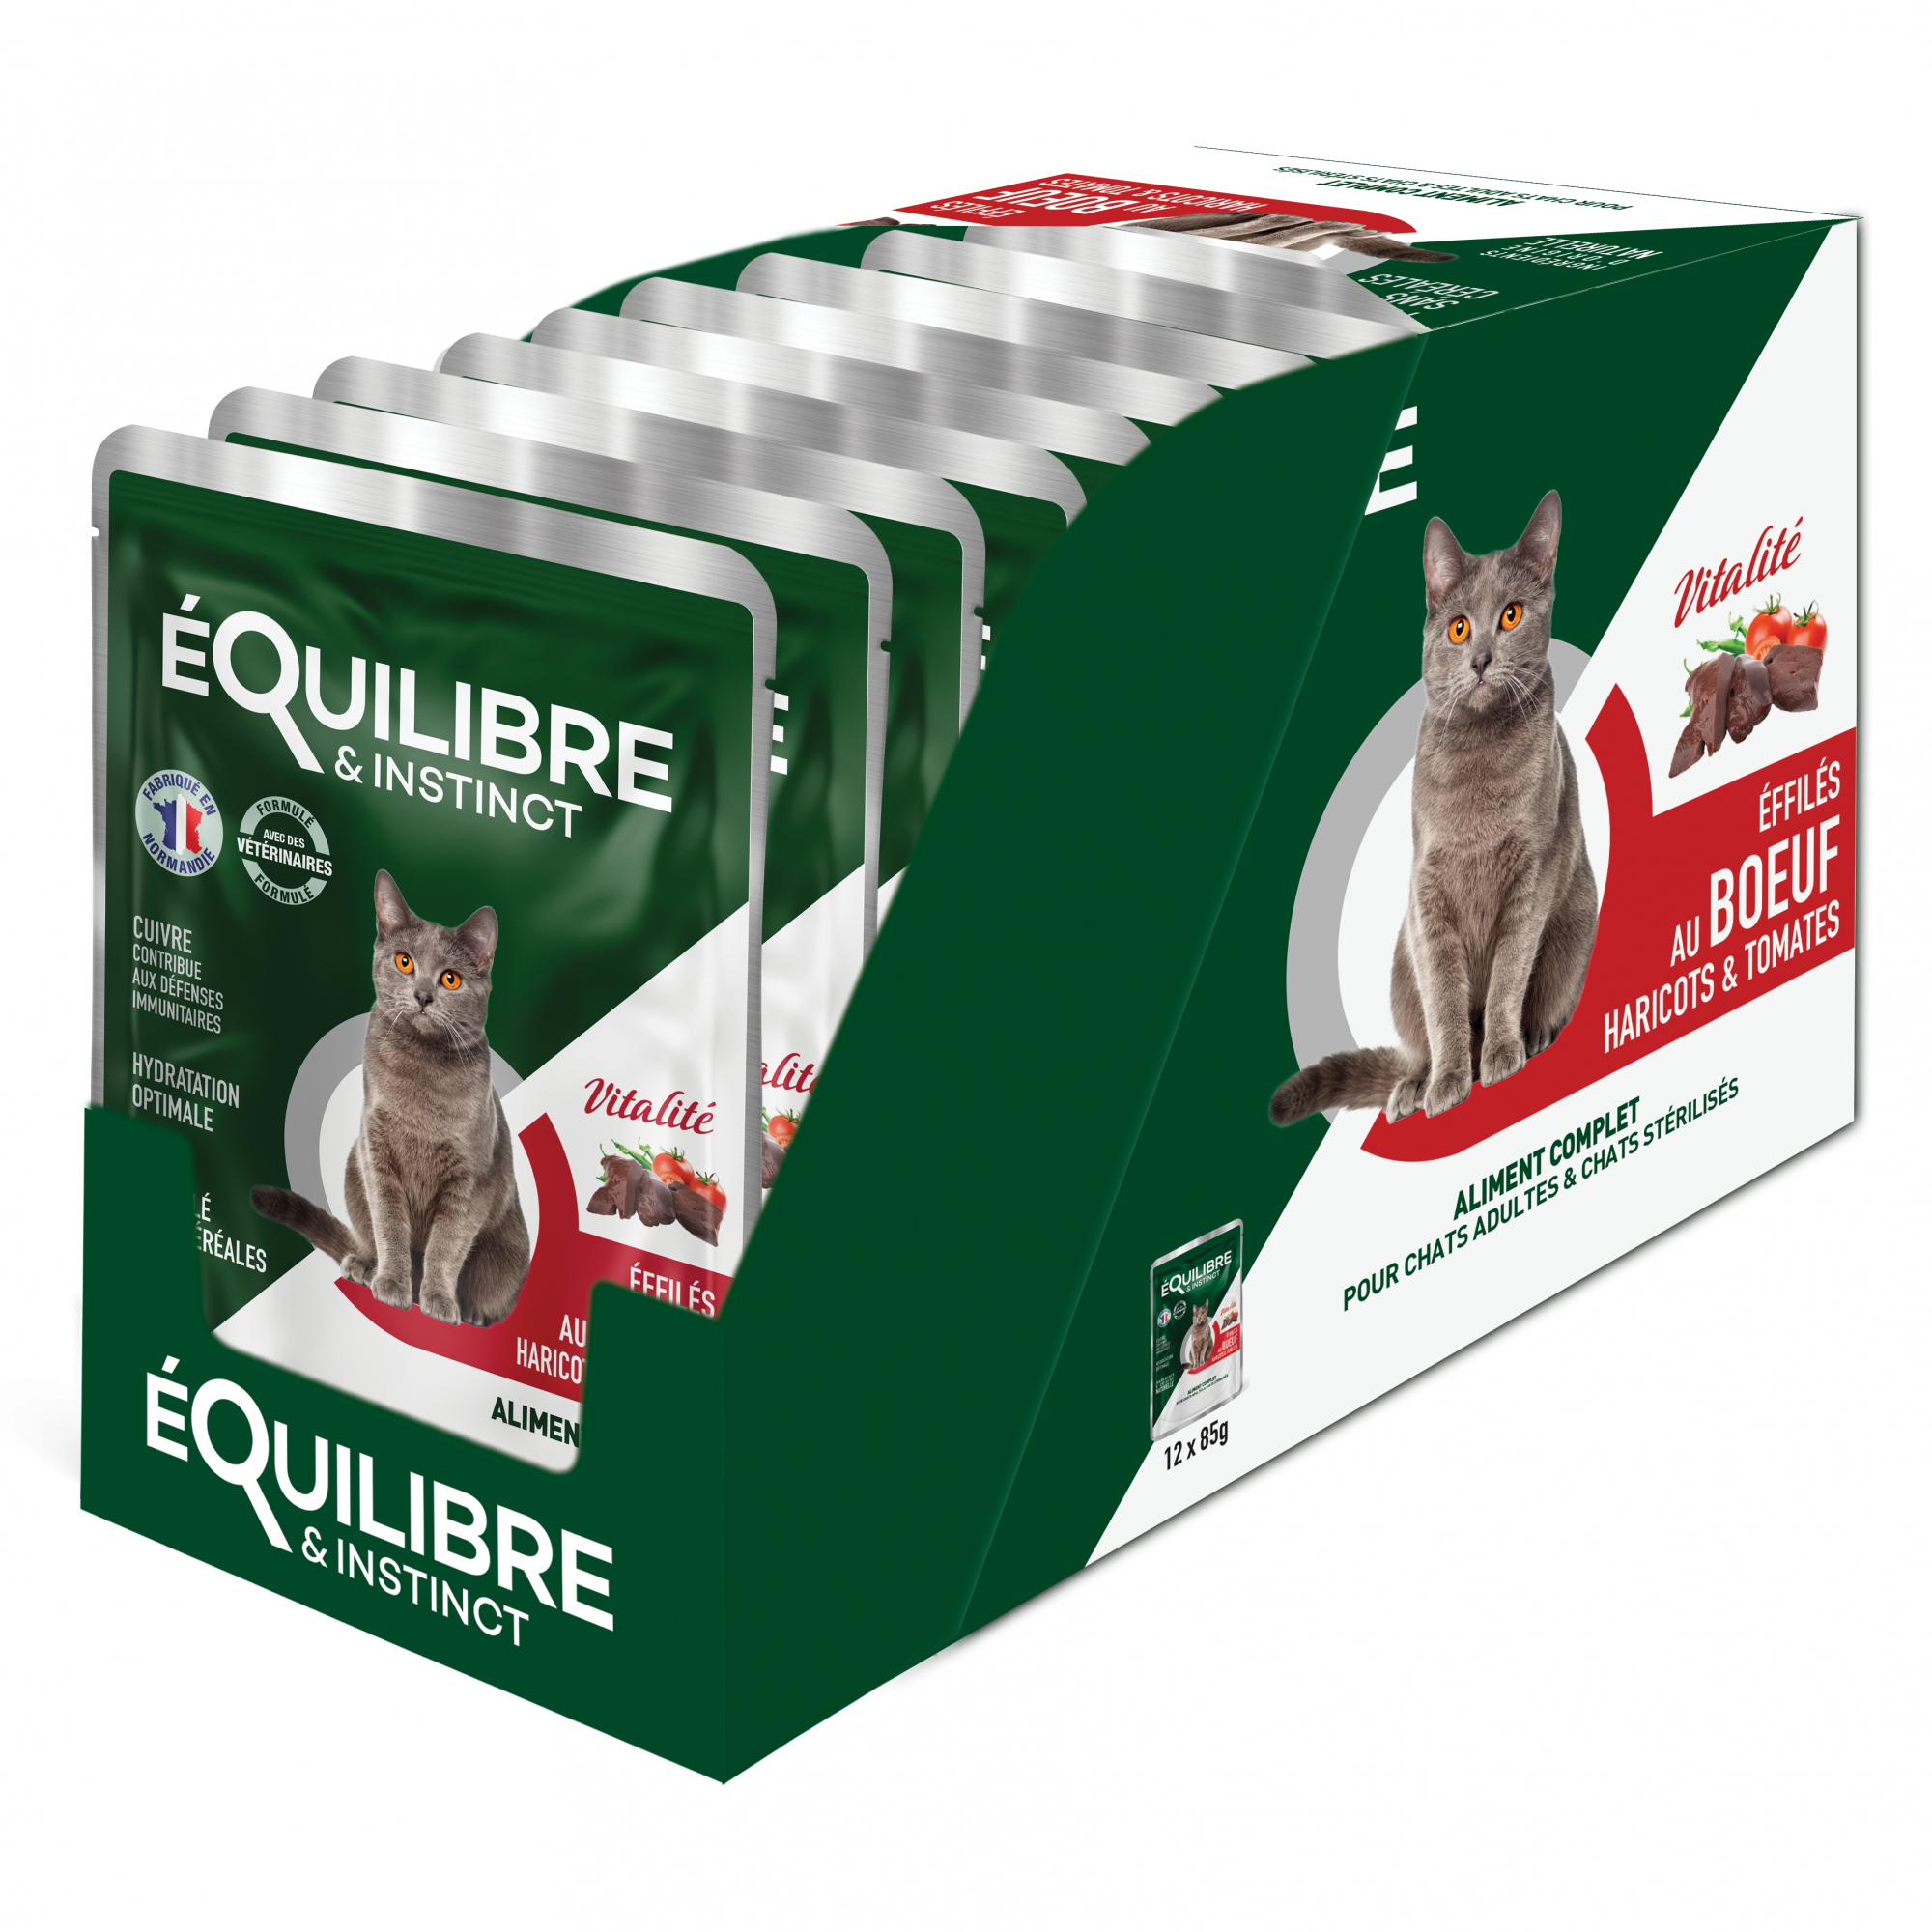 Equilibre & Instinct Vitality Cat Sterilized, met rund